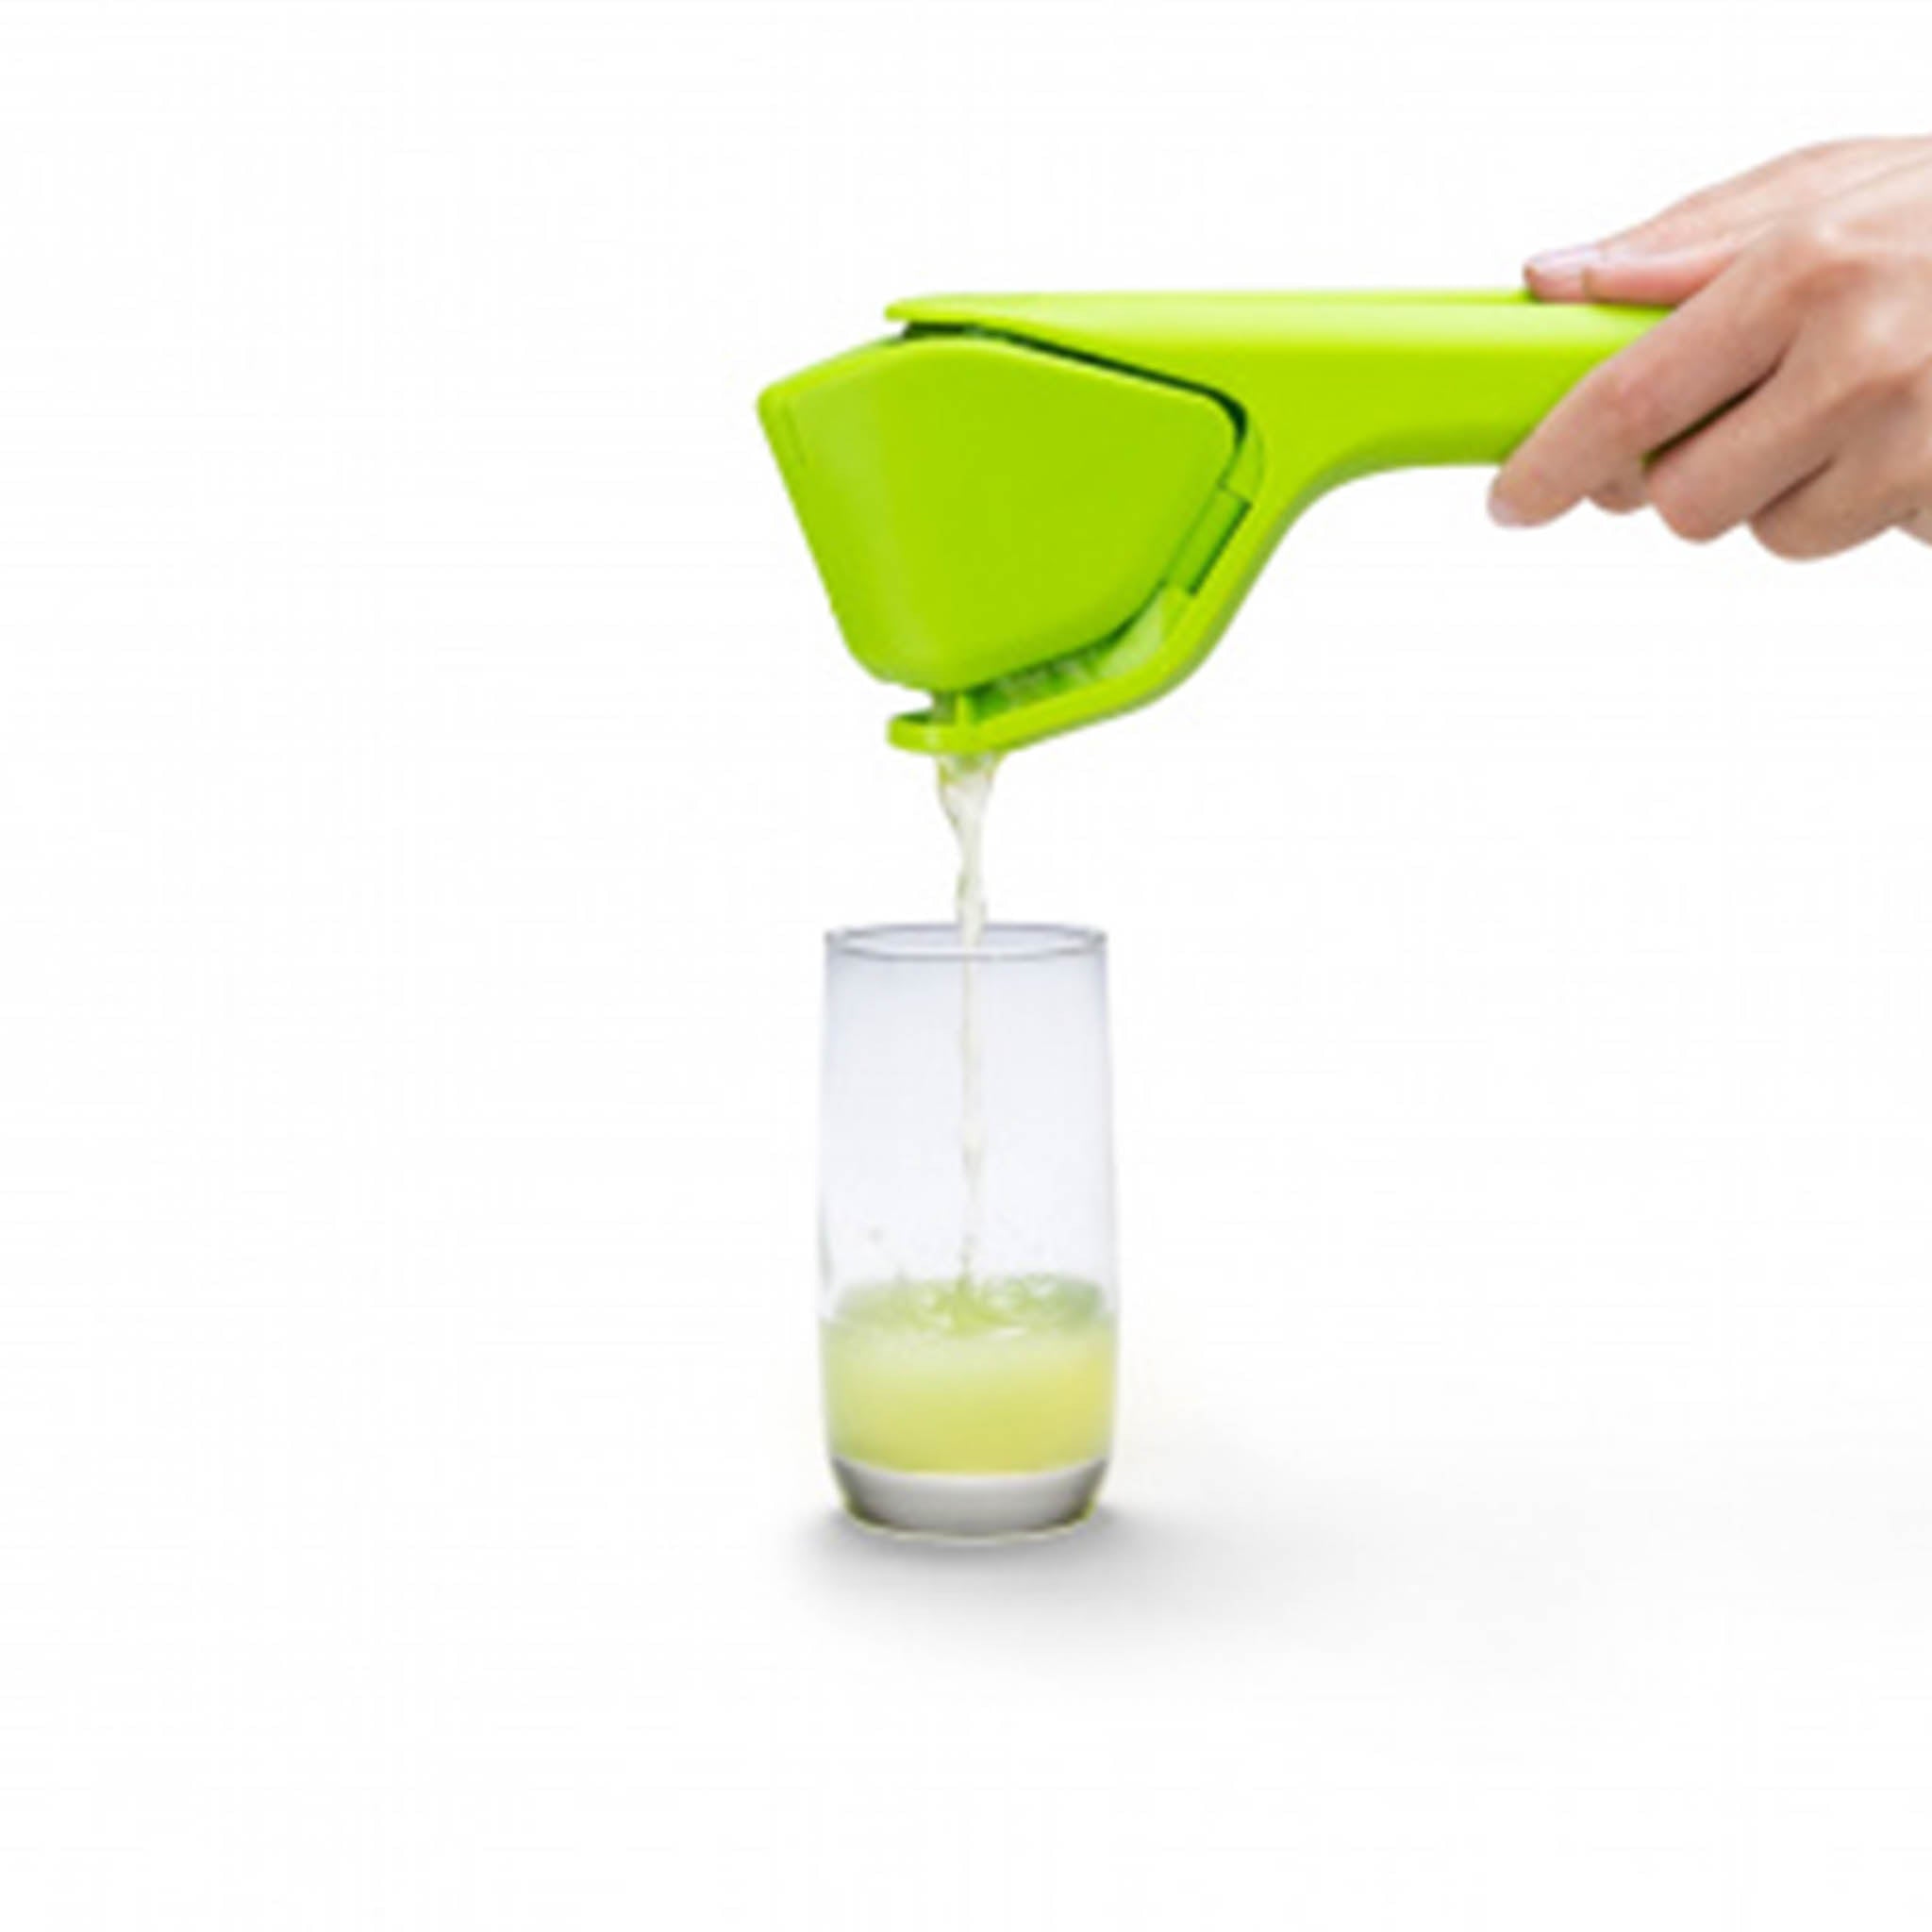 Dreamfarm Green Fluicer Lime Juicer